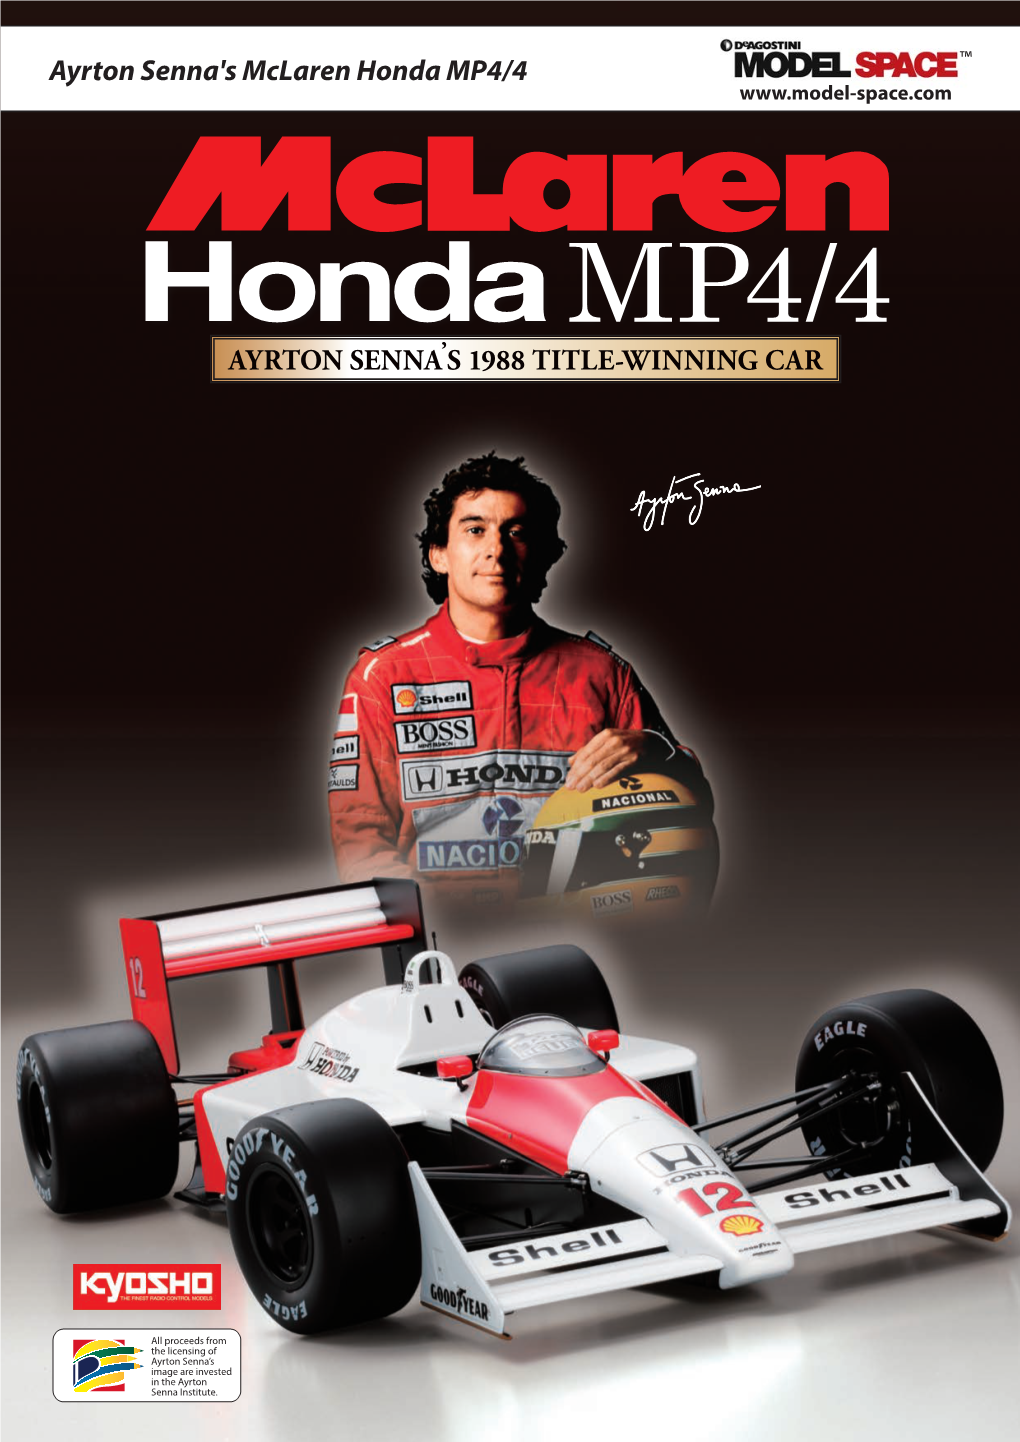 Mclaren Senna MP4/4